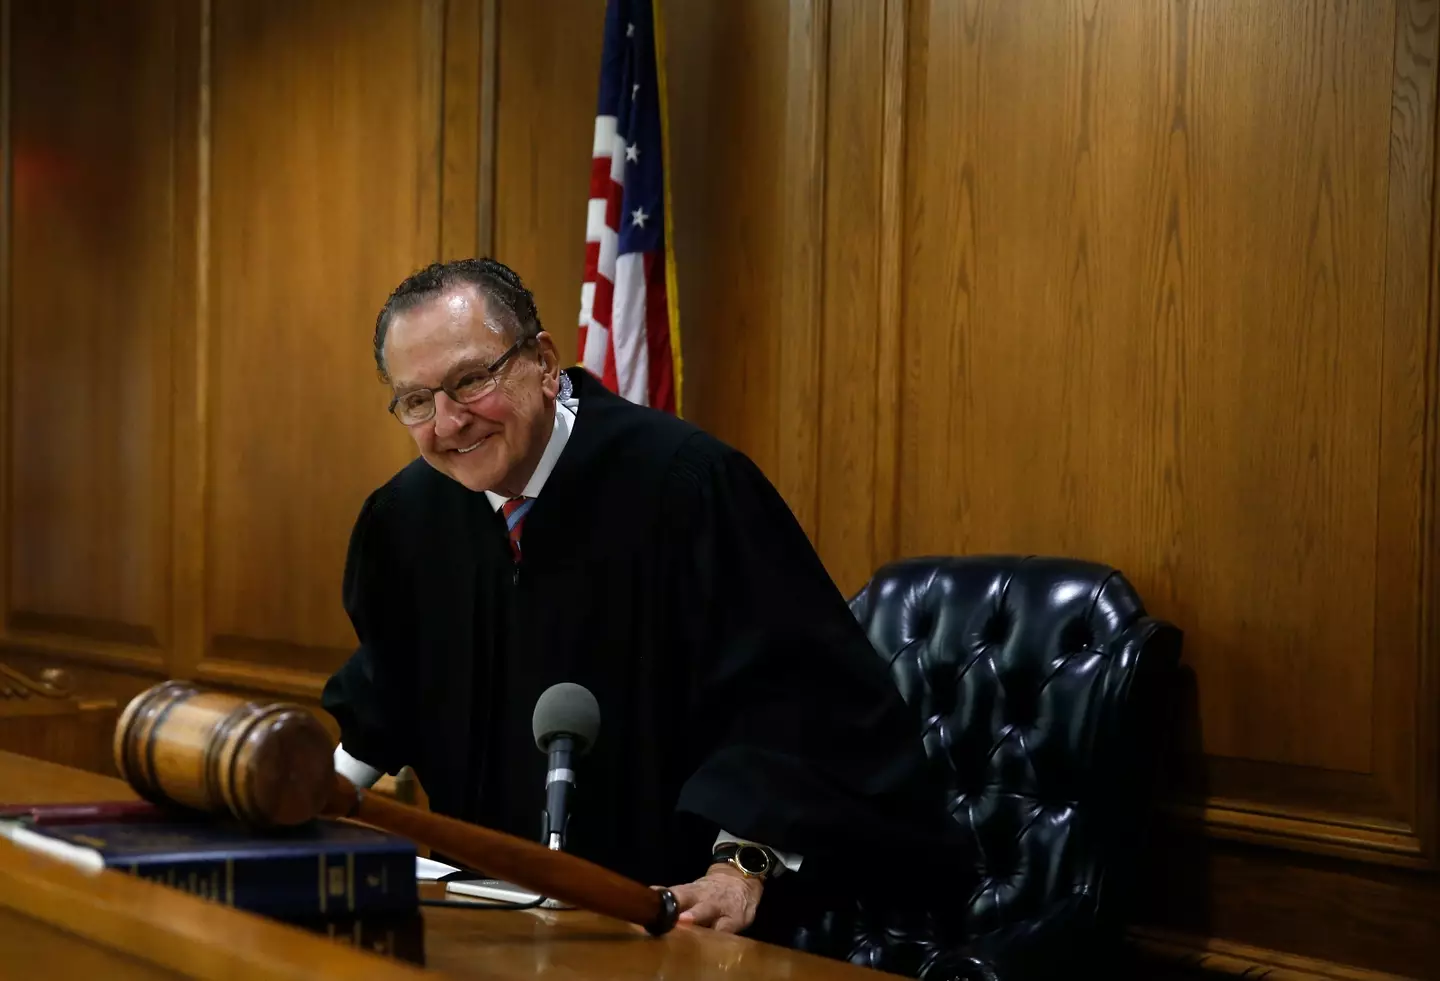 The internet has fallen in love with Judge Caprio. (Jessica Rinaldi/The Boston Globe via Getty Images)